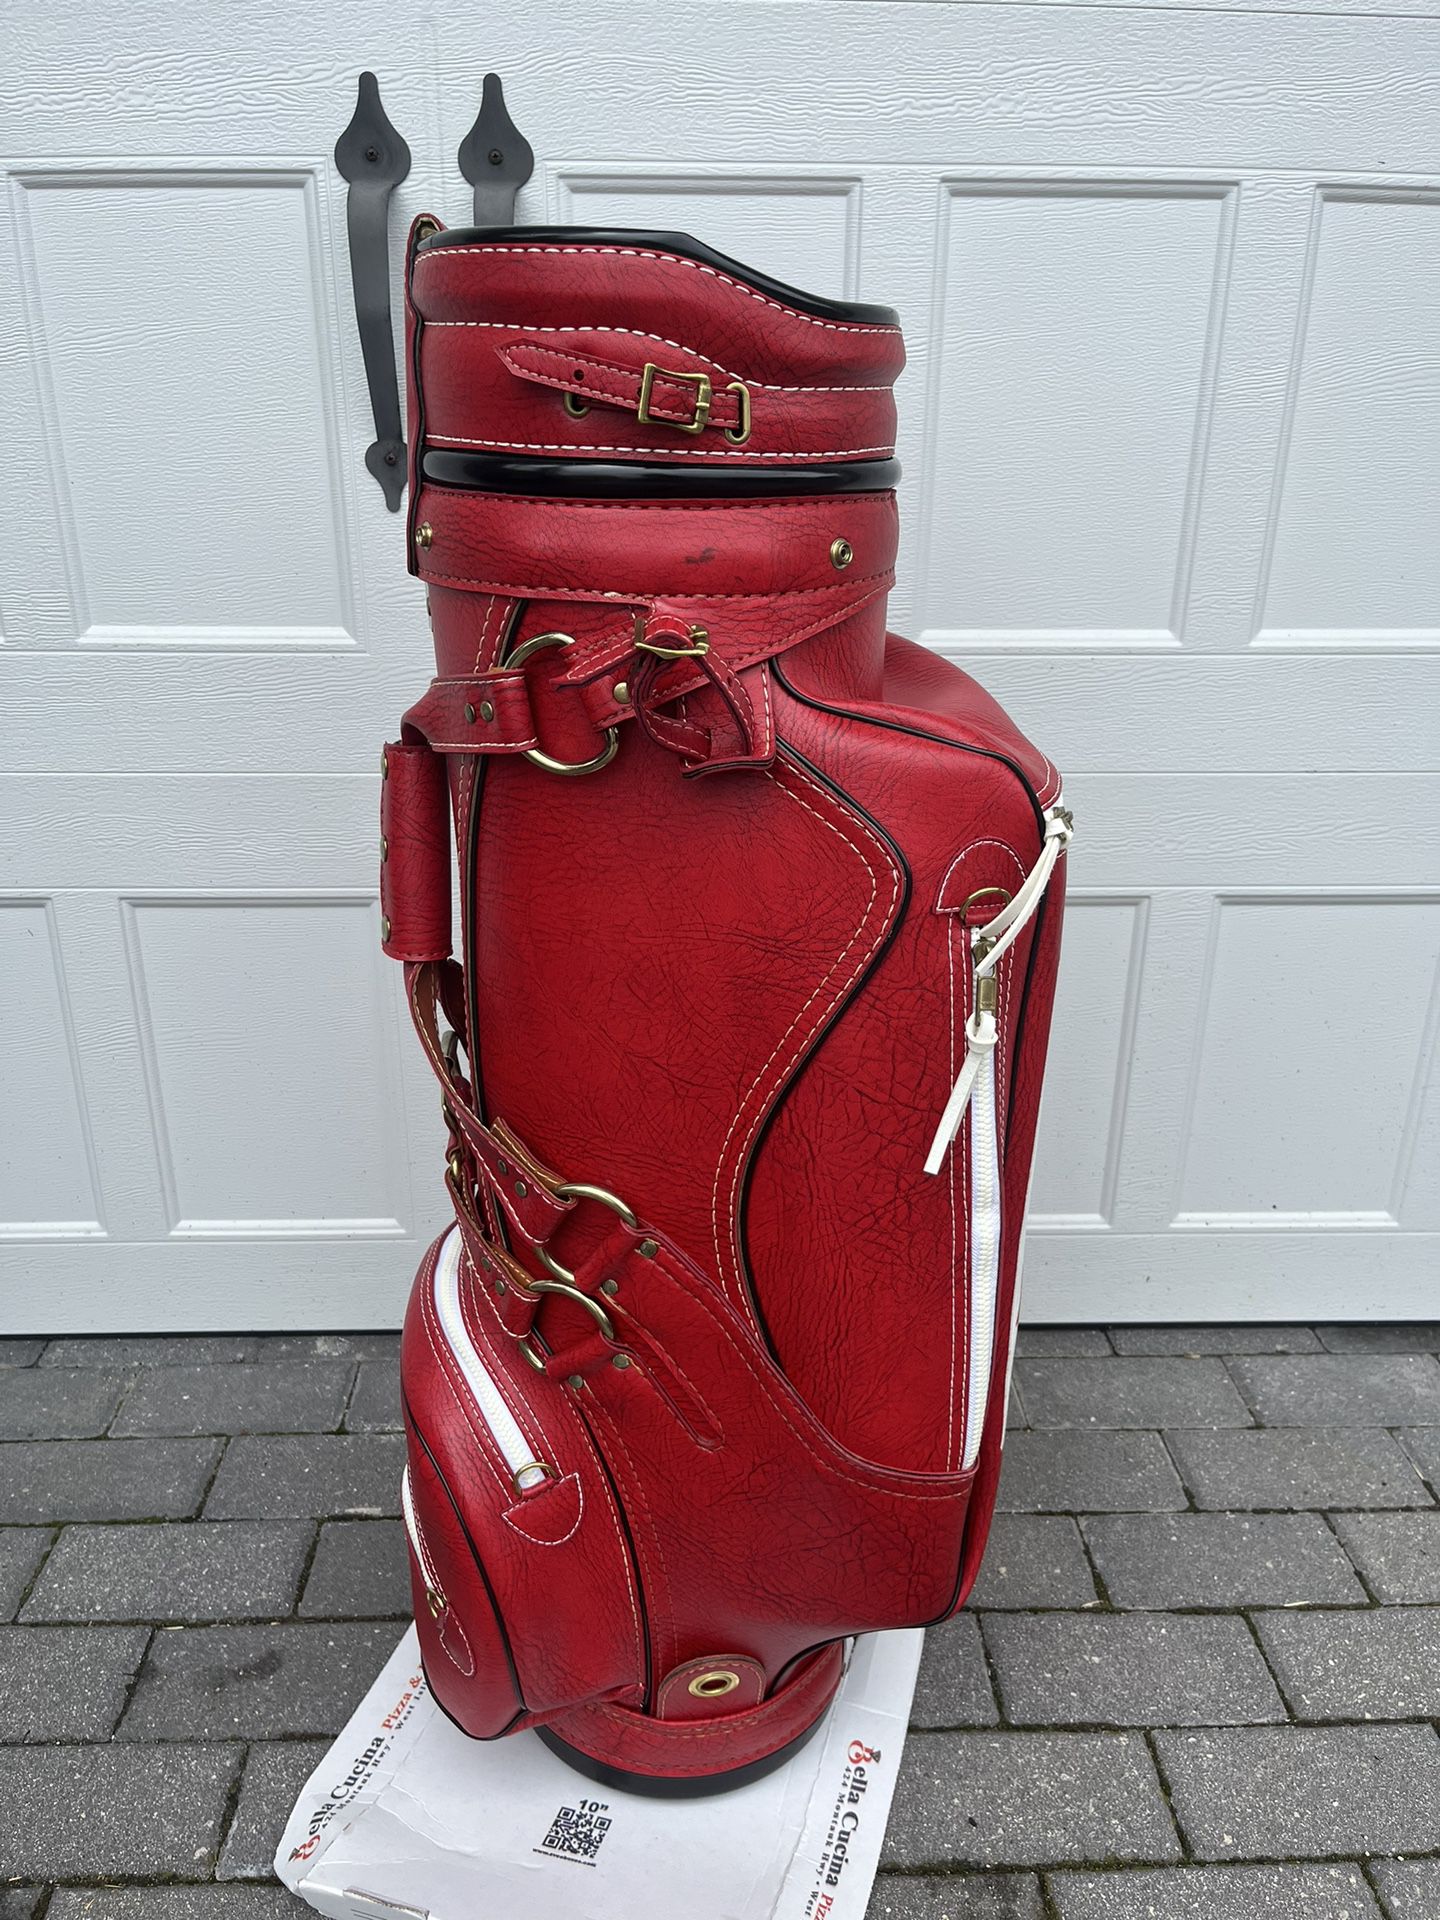 vintage golf bags